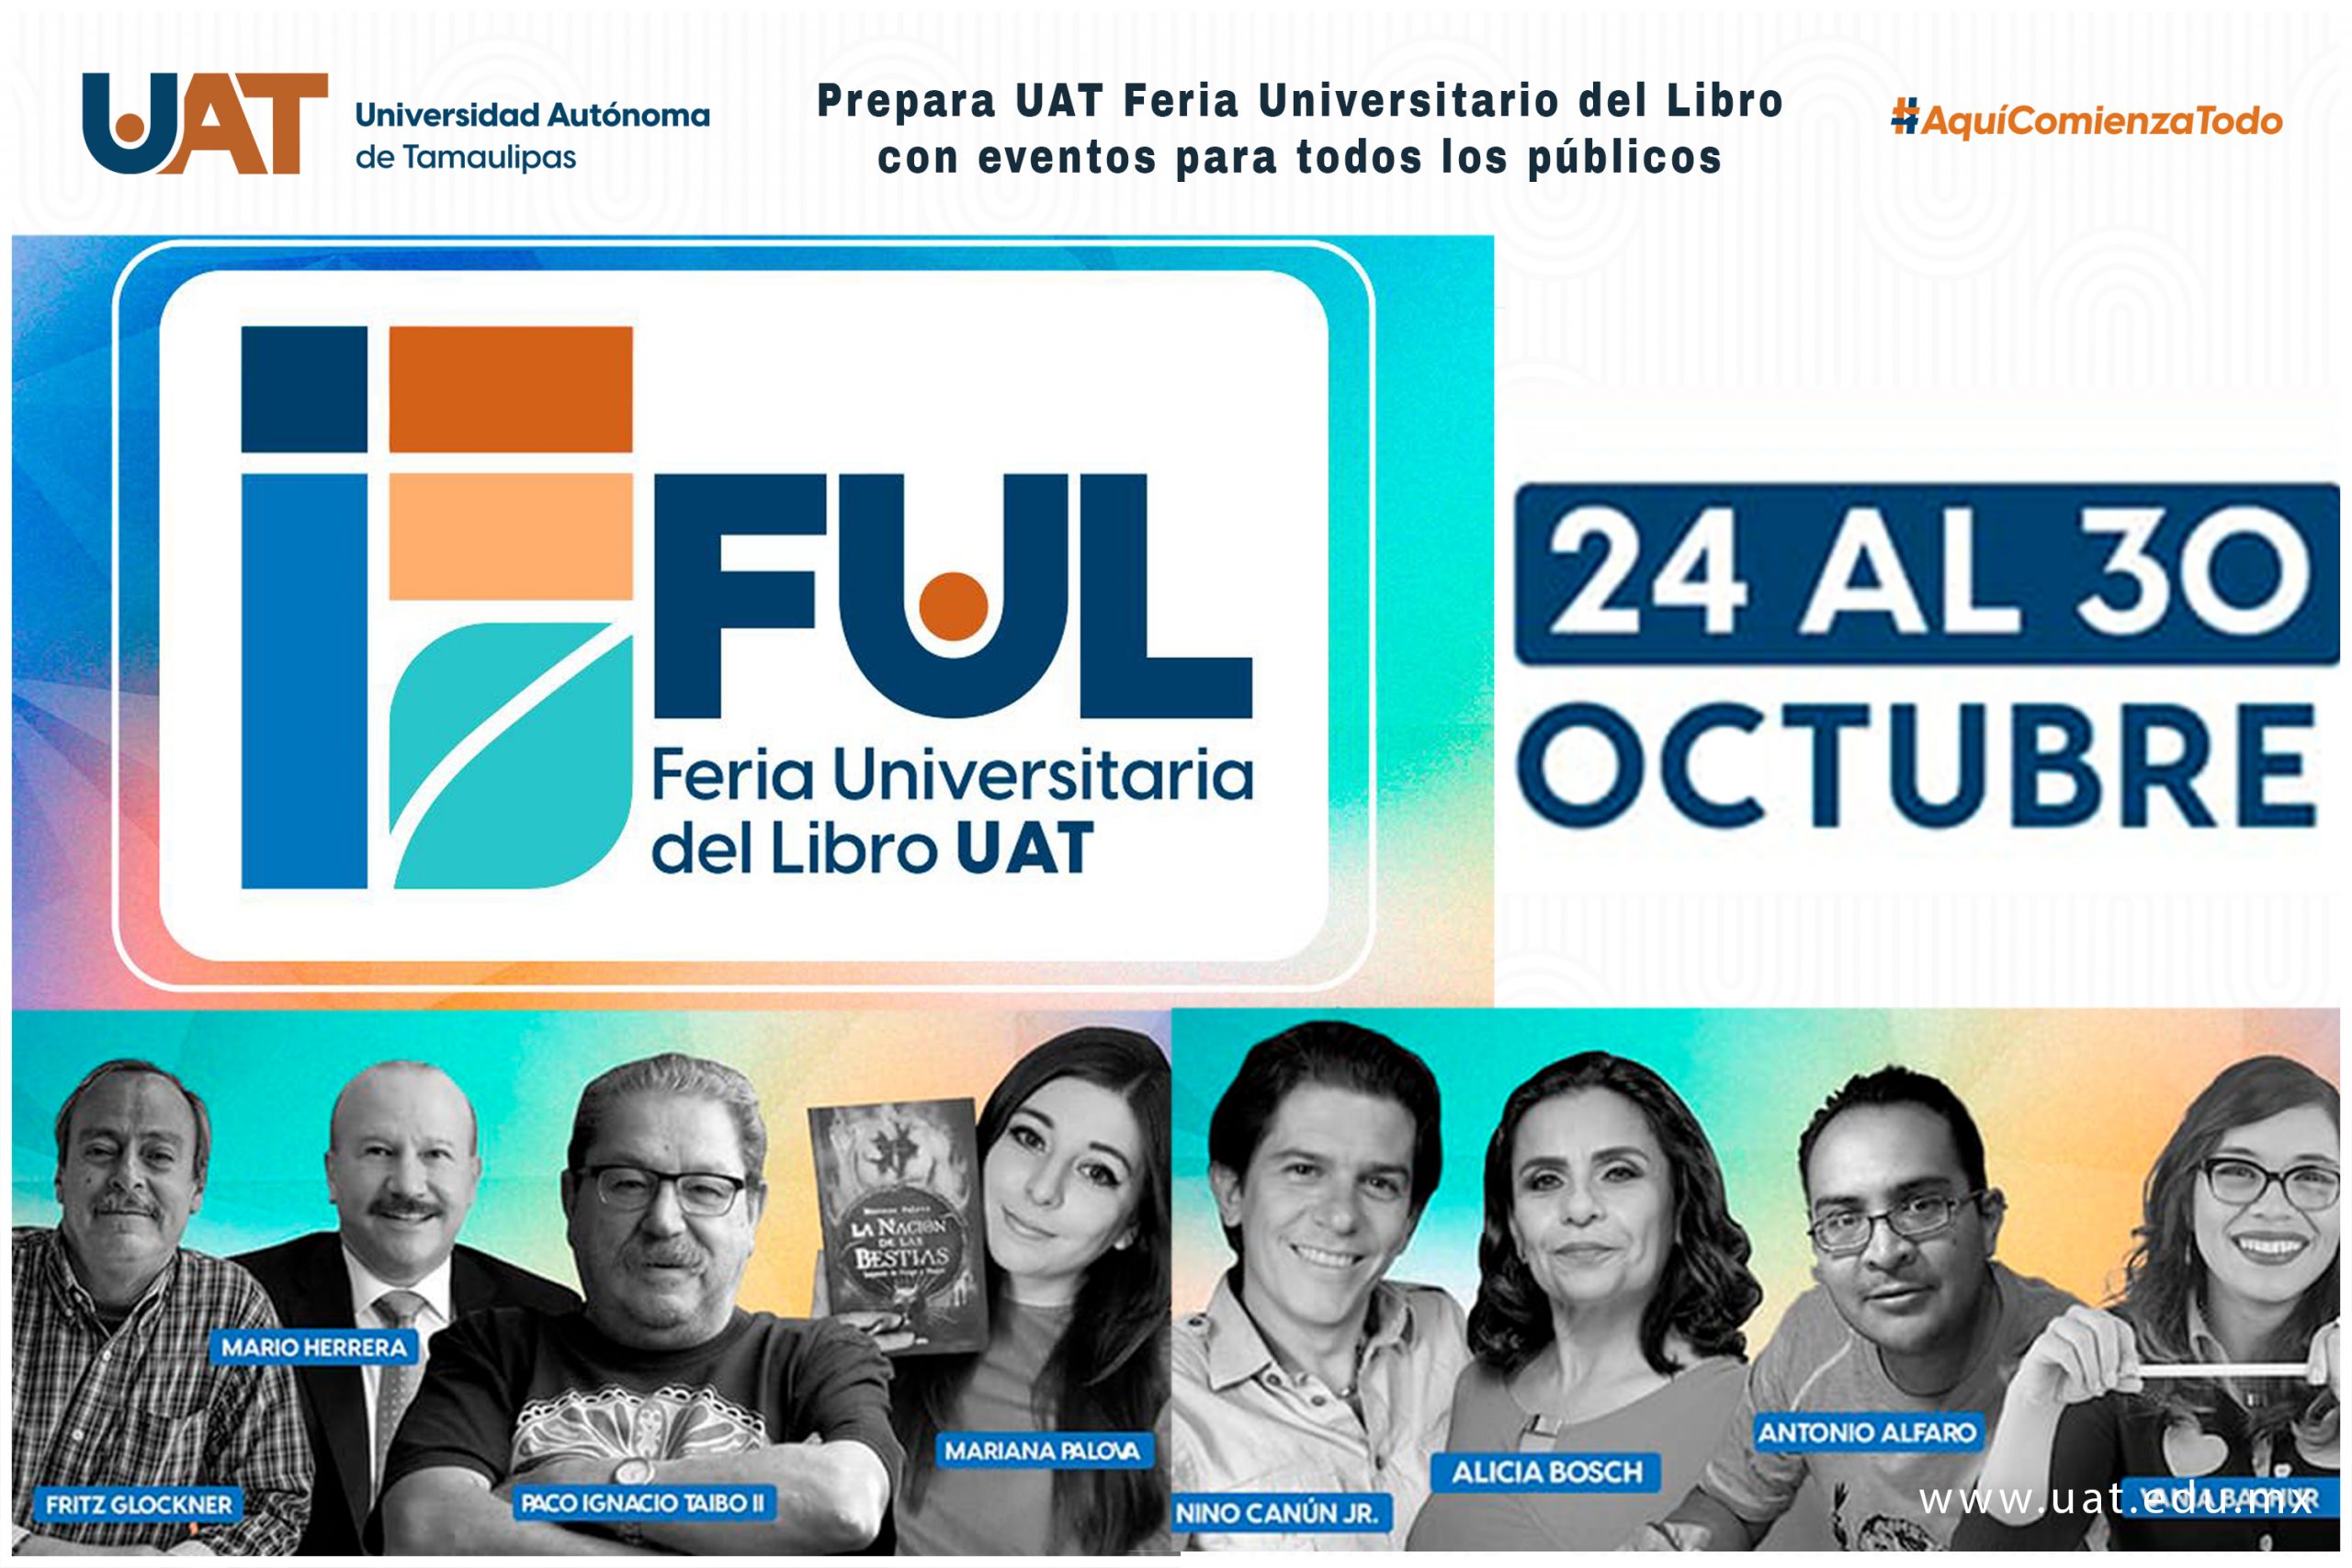 La Feria Universitario del Libro UAT 2022 prepara eventos para todos los públicos